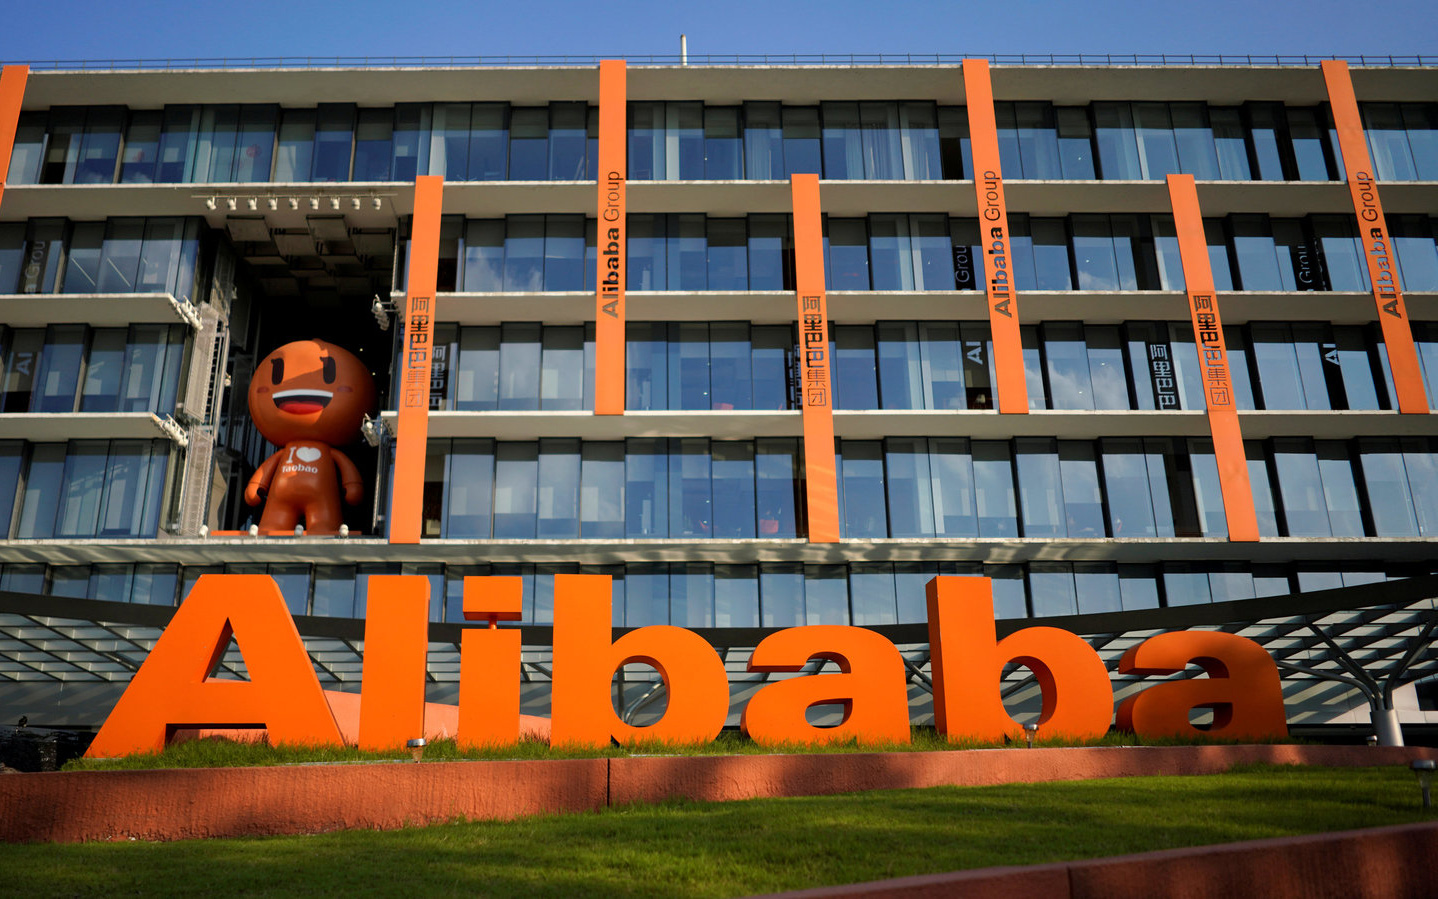 Tỷ phú Jack Ma cùng đế chế Alibaba: “Không một ai có thể an toàn mãi mãi”